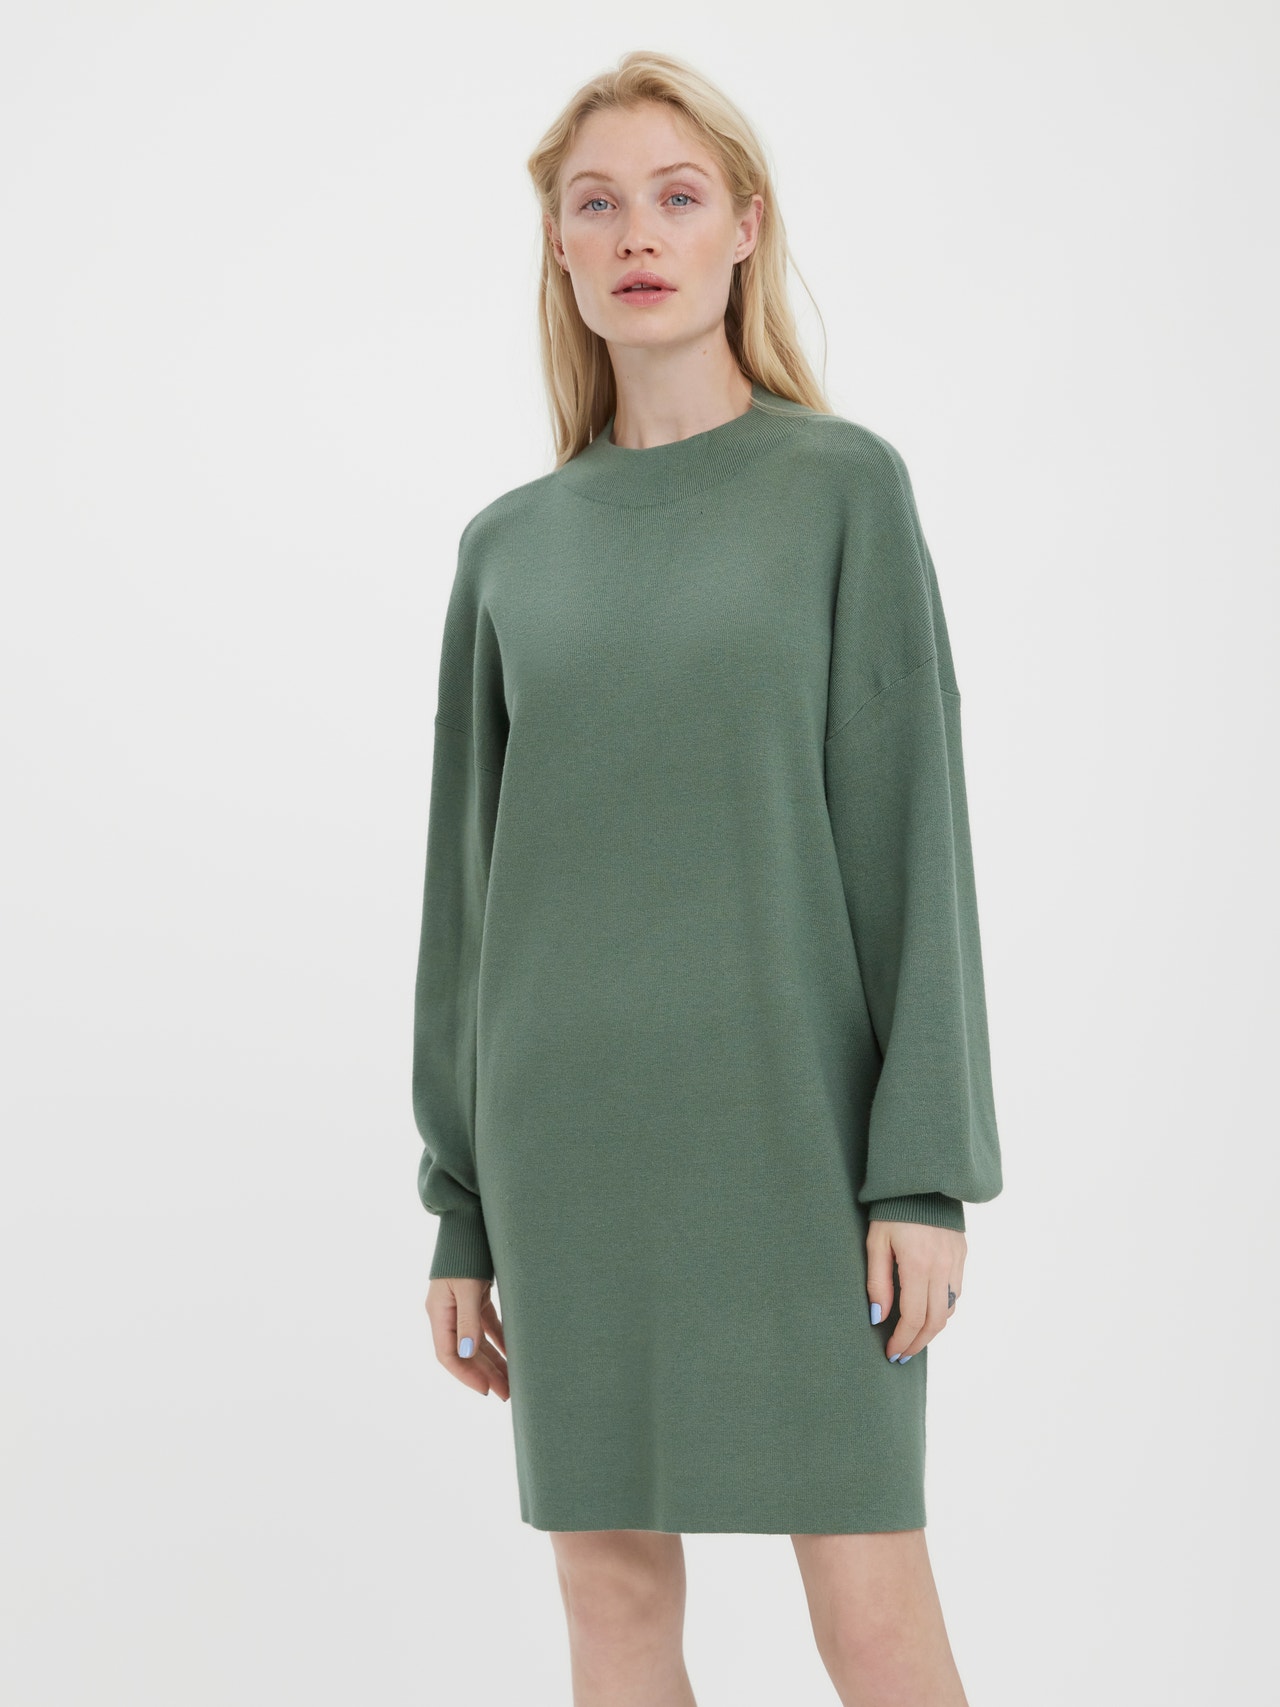 Vero Moda VMNANCY Krótka sukienka -Laurel Wreath - 10249116